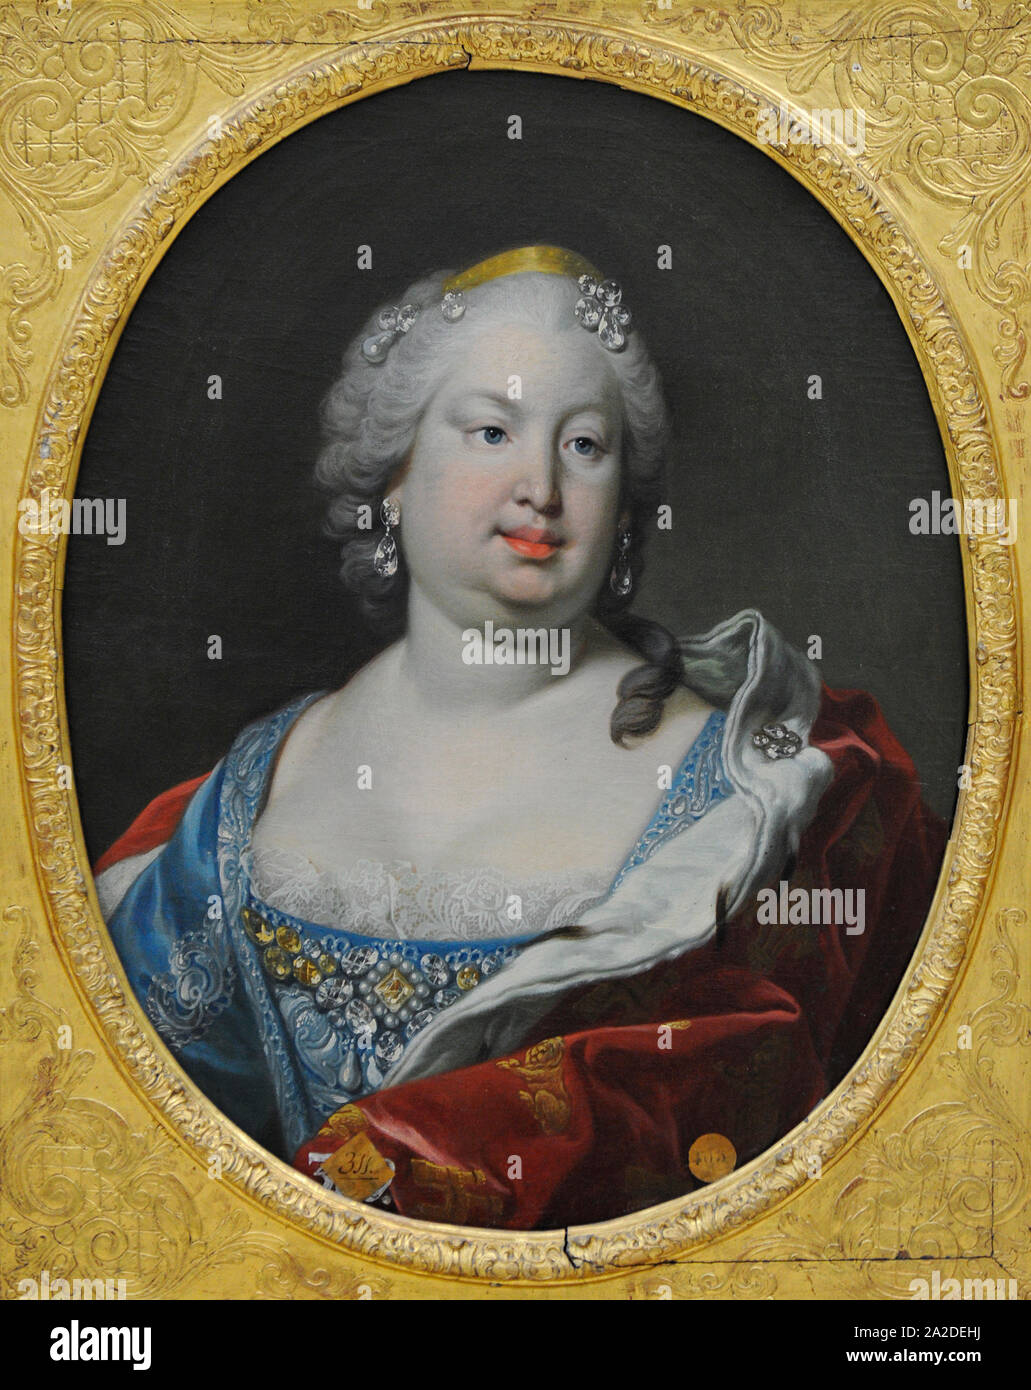 Barbara von Portugal (1711-1758). Königin von Spanien, Ehefrau von Ferdinand VI. Porträt von Louis Michel van Loo (1707-1771). San Fernando Königliche Akademie der Schönen Künste in Madrid. Spanien. Stockfoto